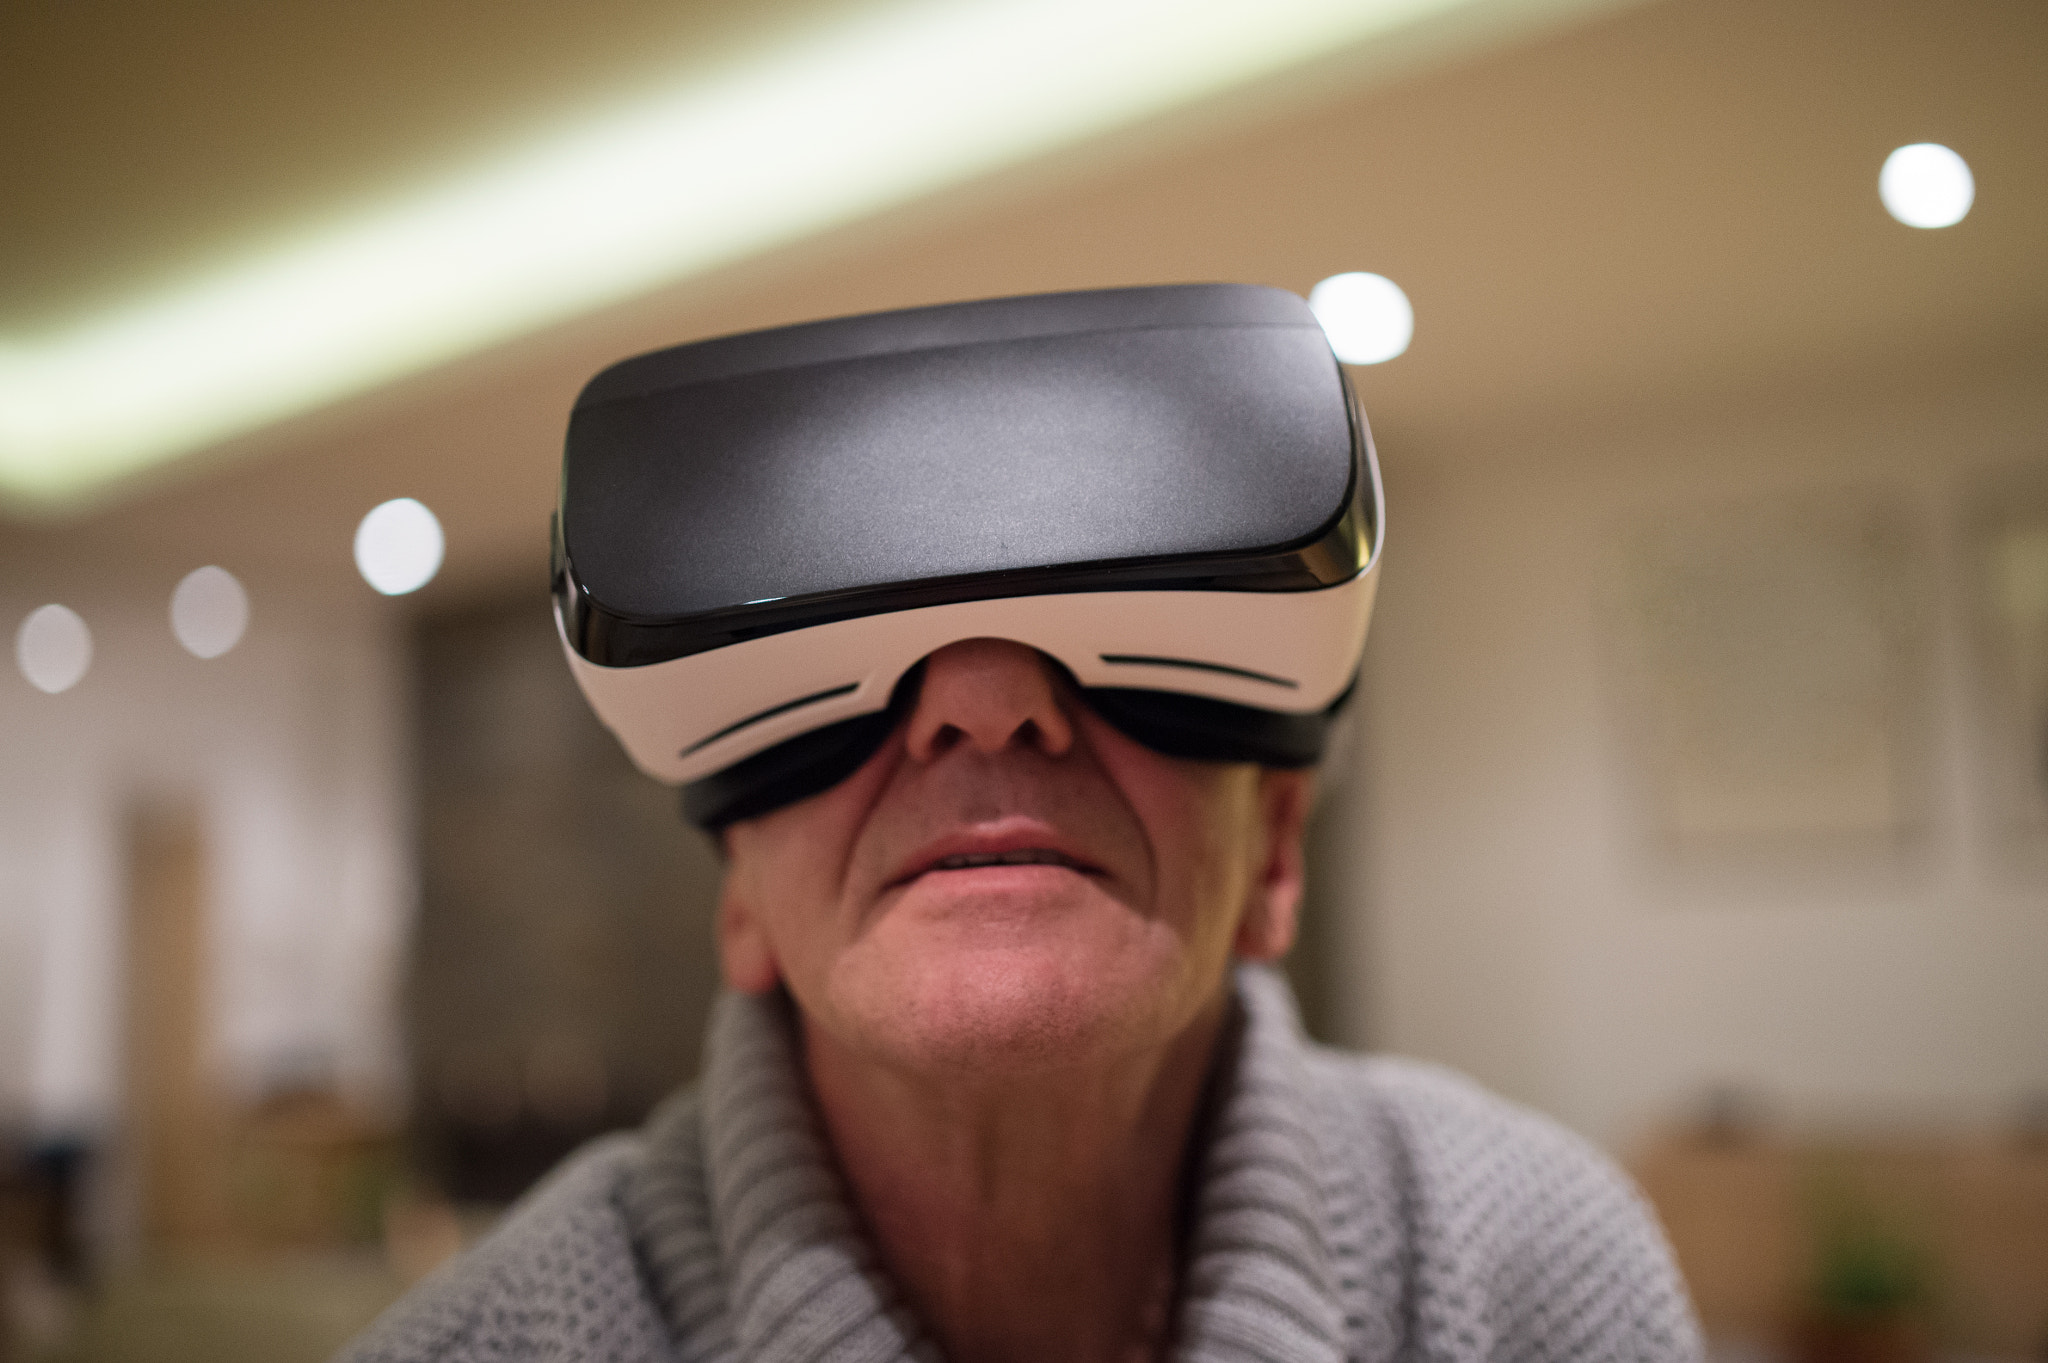 Nikon D4S sample photo. Senior man wearing virtual reality goggles at home photography